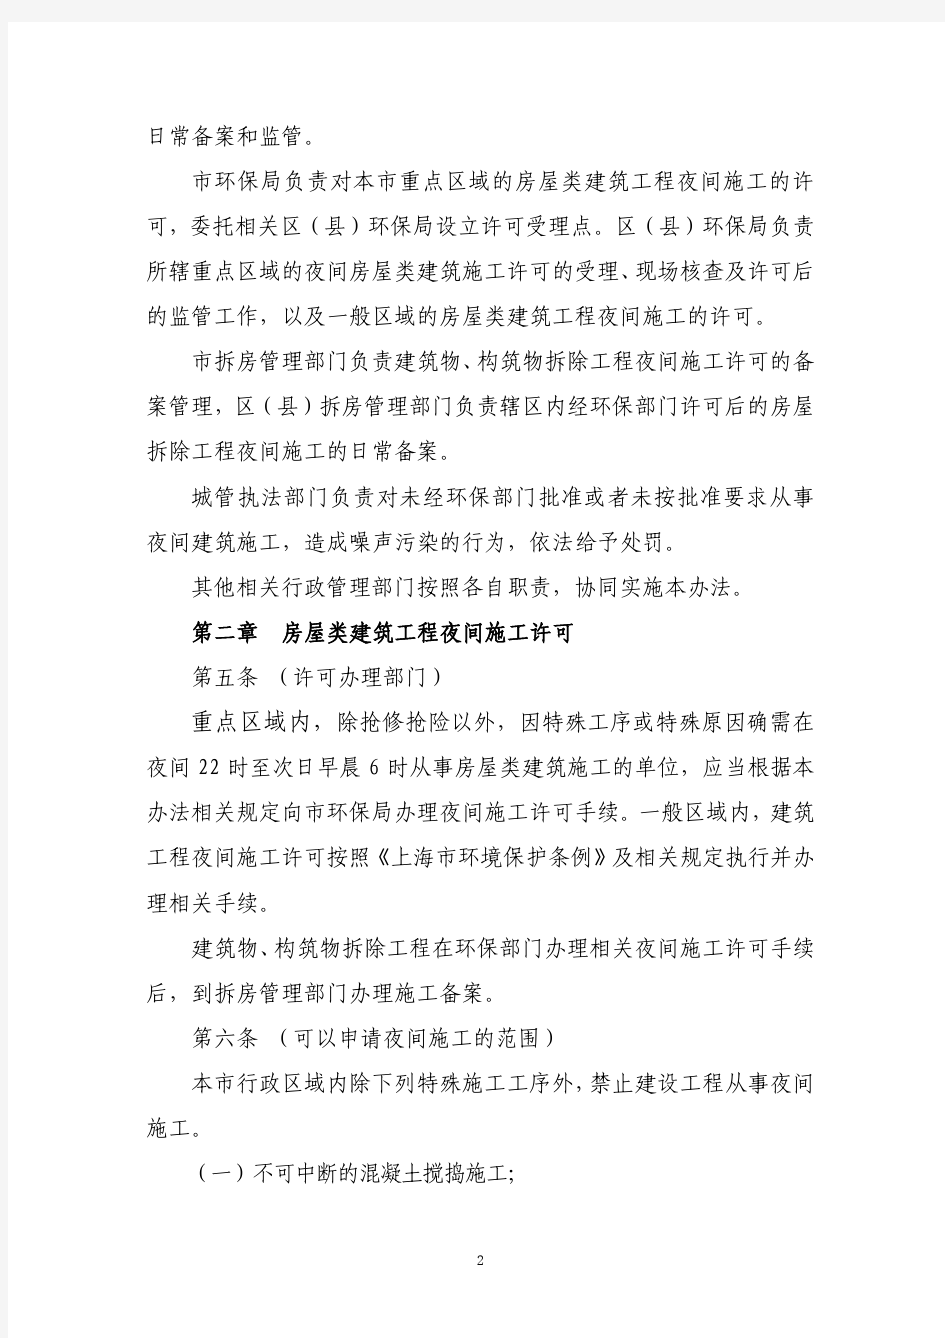 上海市建设工程夜间施工许可和备案审查管理办法